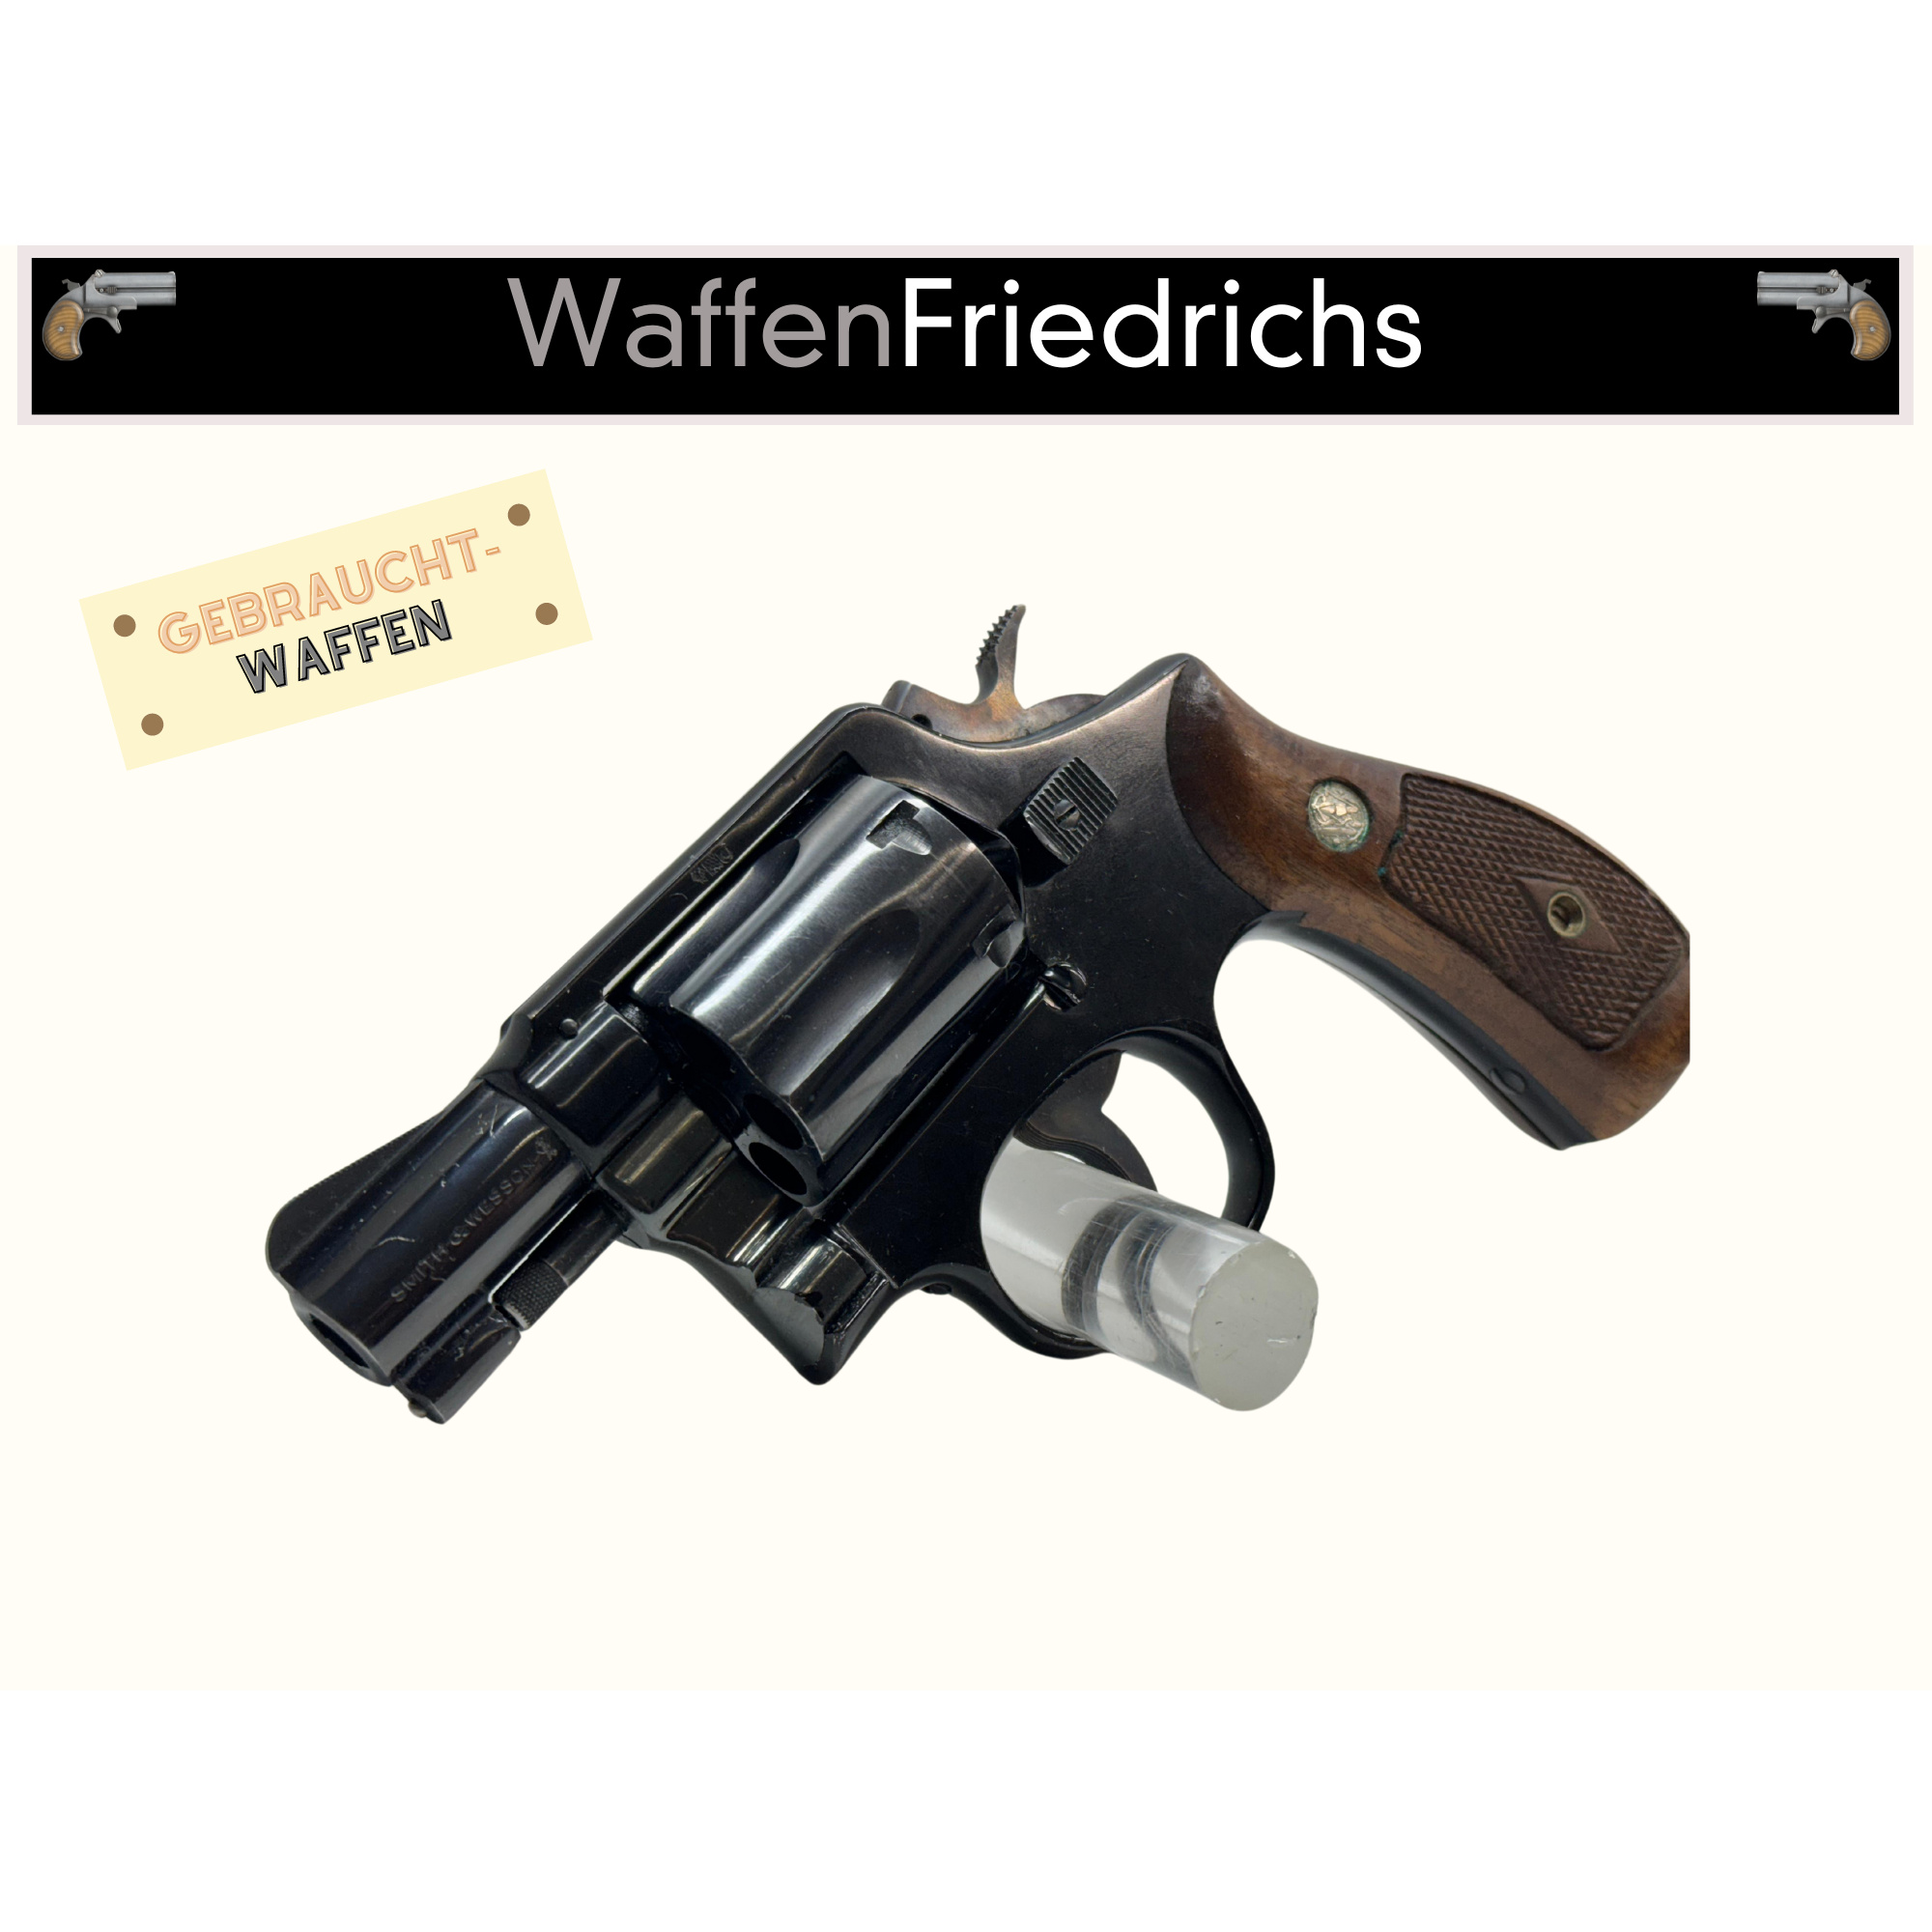 S&W Smith&Wesson Mod. 12 - WaffenFriedrichs